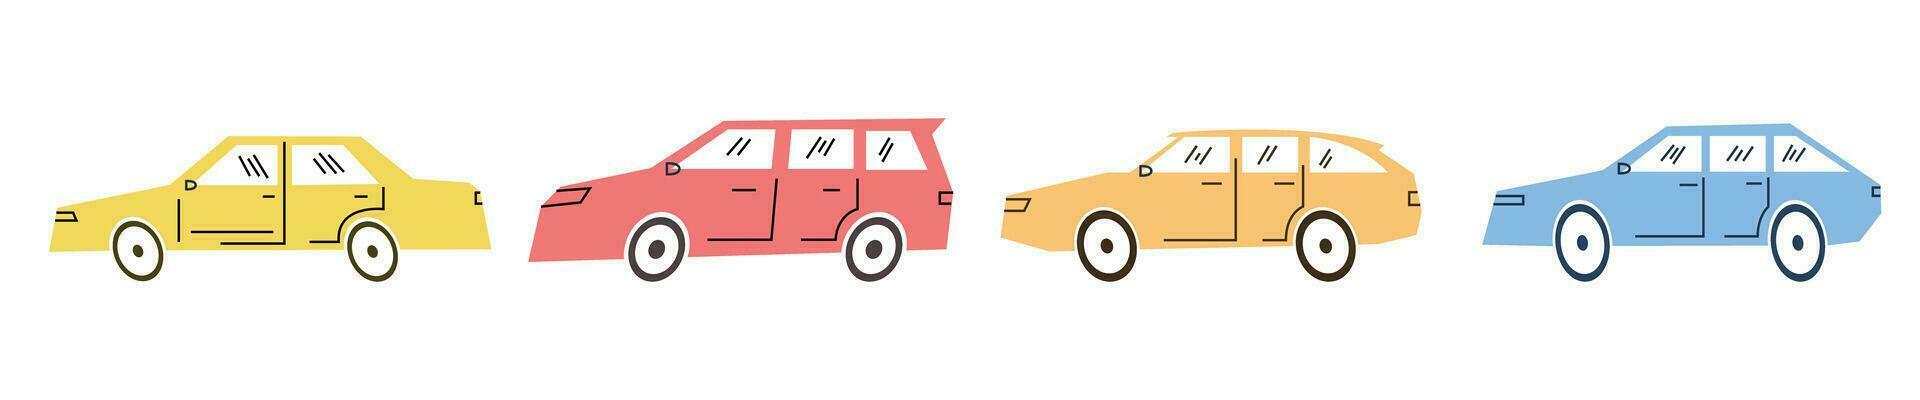 dessin animé voitures coloré plat style dessin de côté vecteur